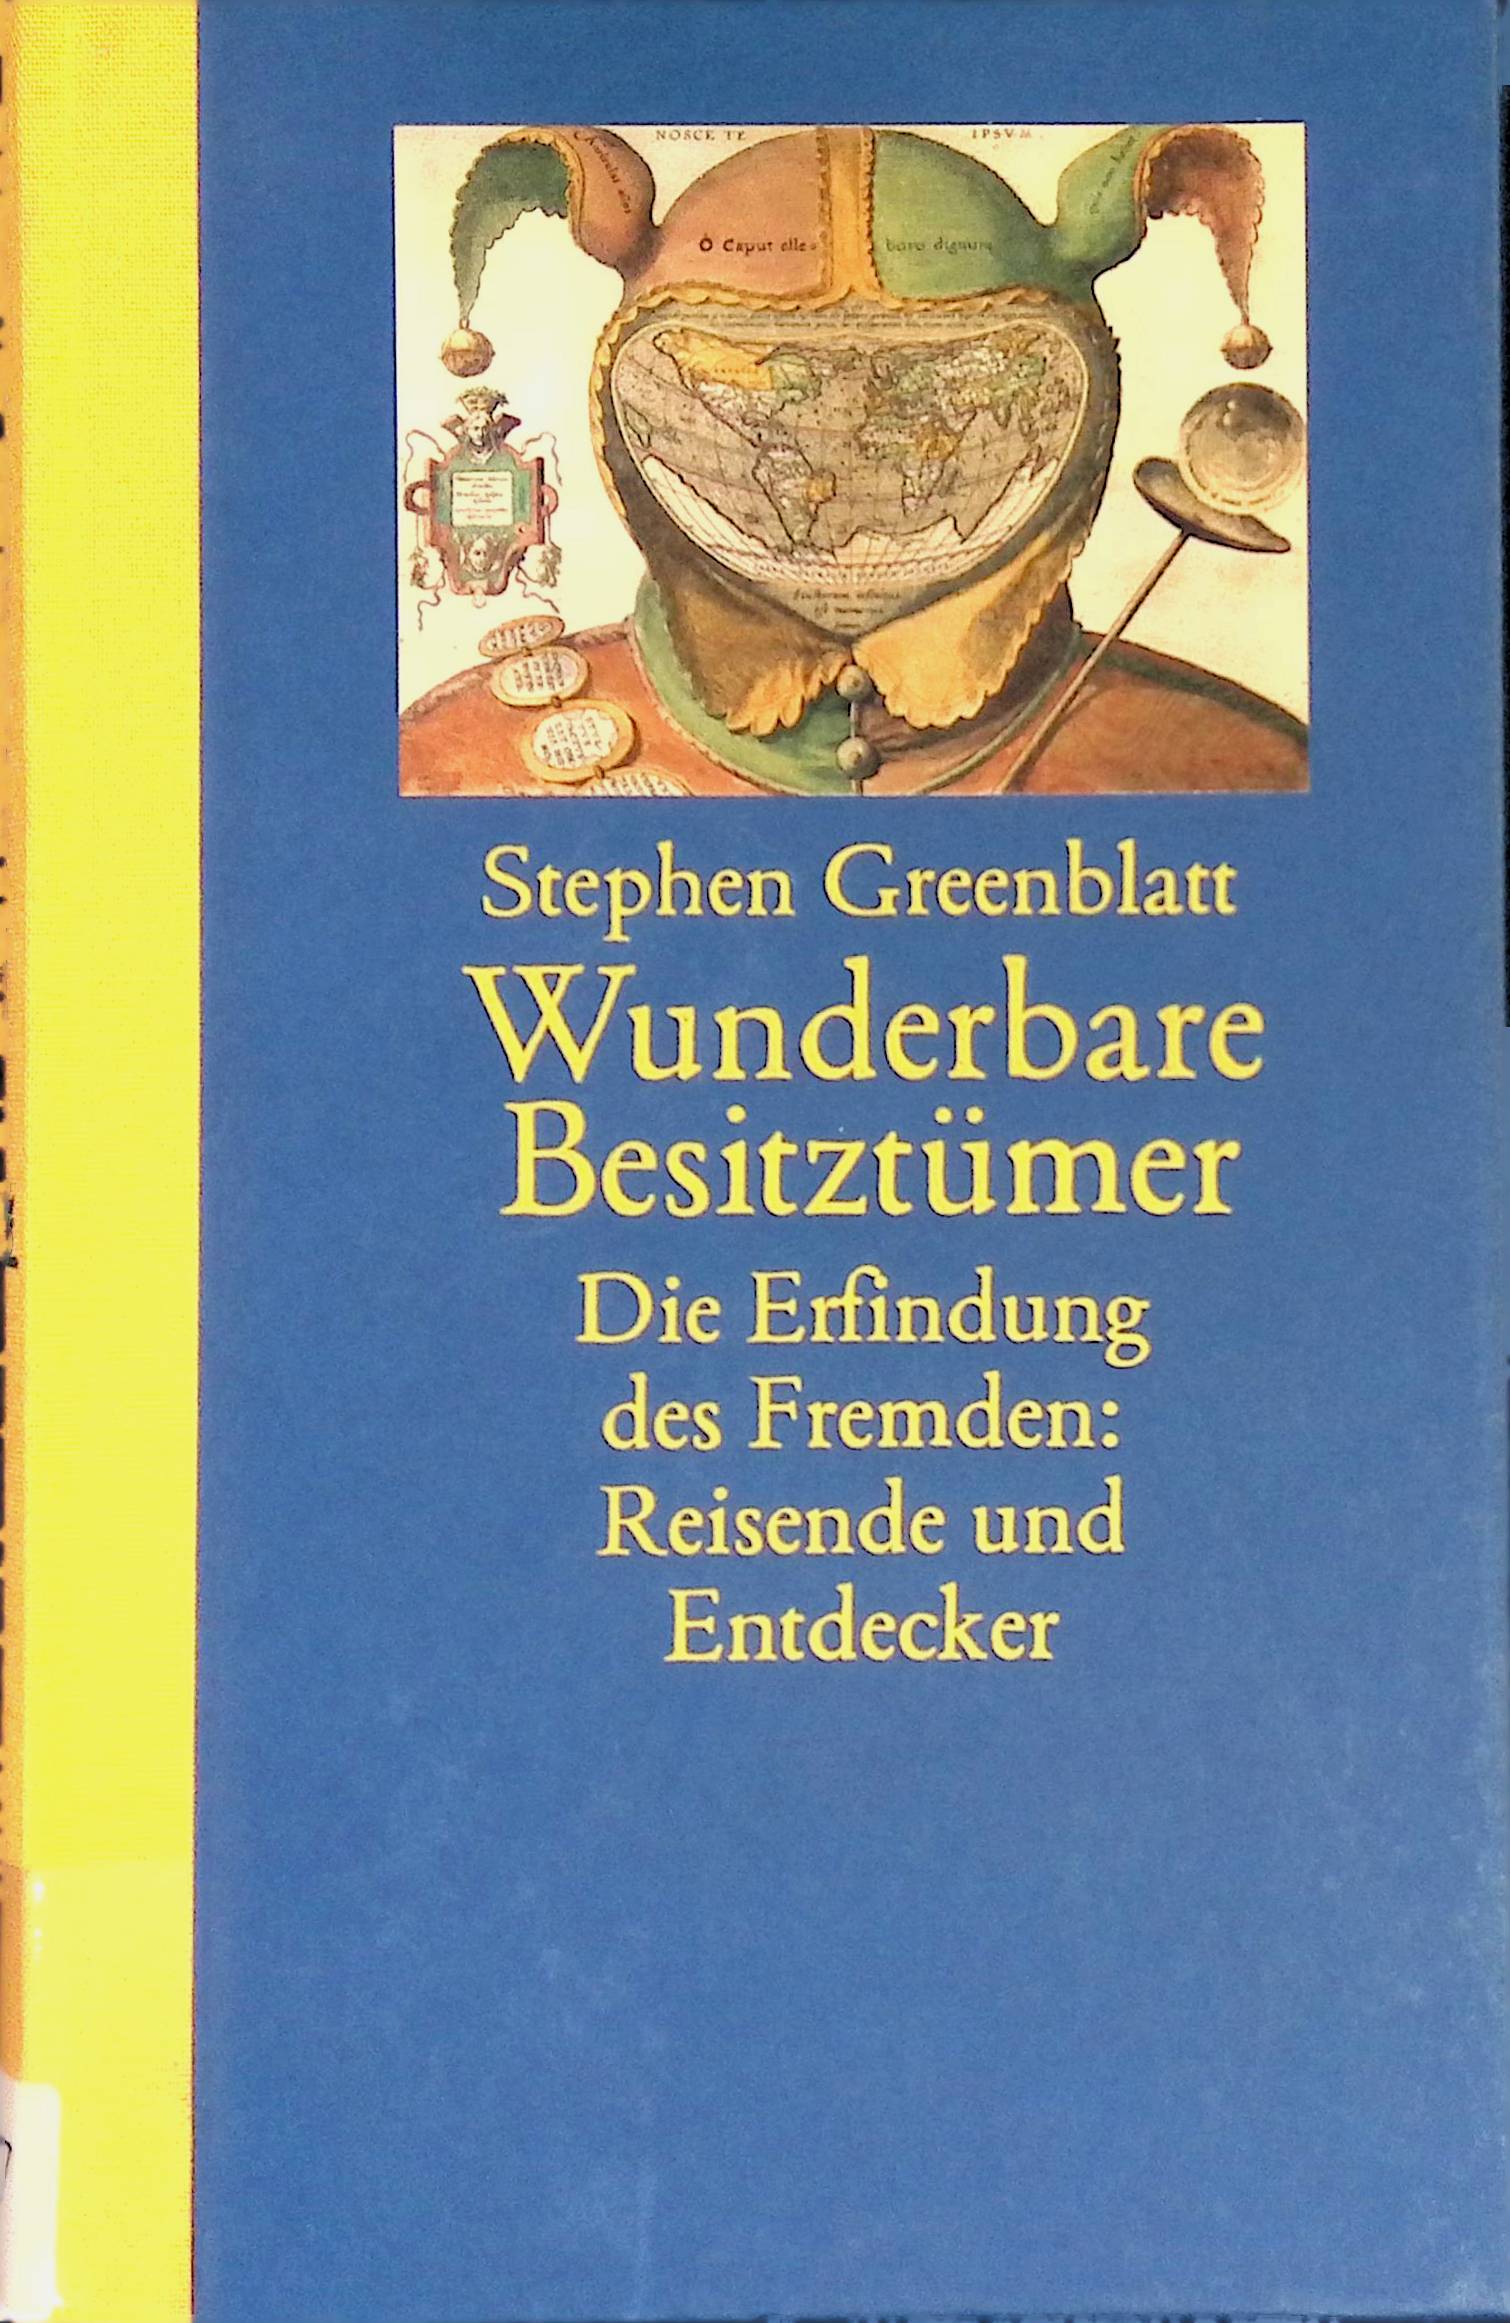 Wunderbare Besitztümer : Die Erfindung des Fremden : Reisende und Entdecker. - Greenblatt, Stephen